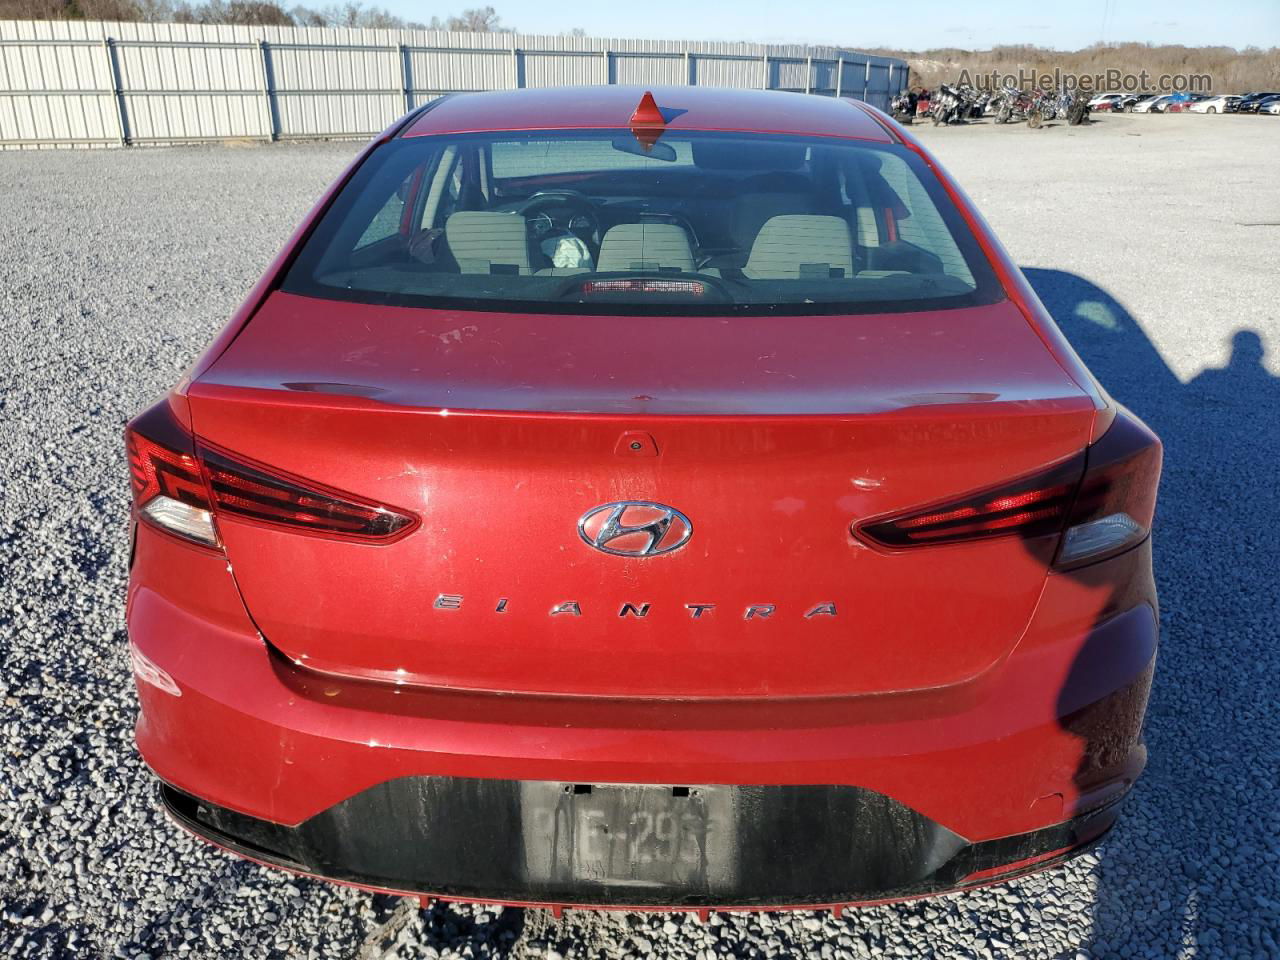 2019 Hyundai Elantra Sel Red vin: KMHD84LF3KU859771